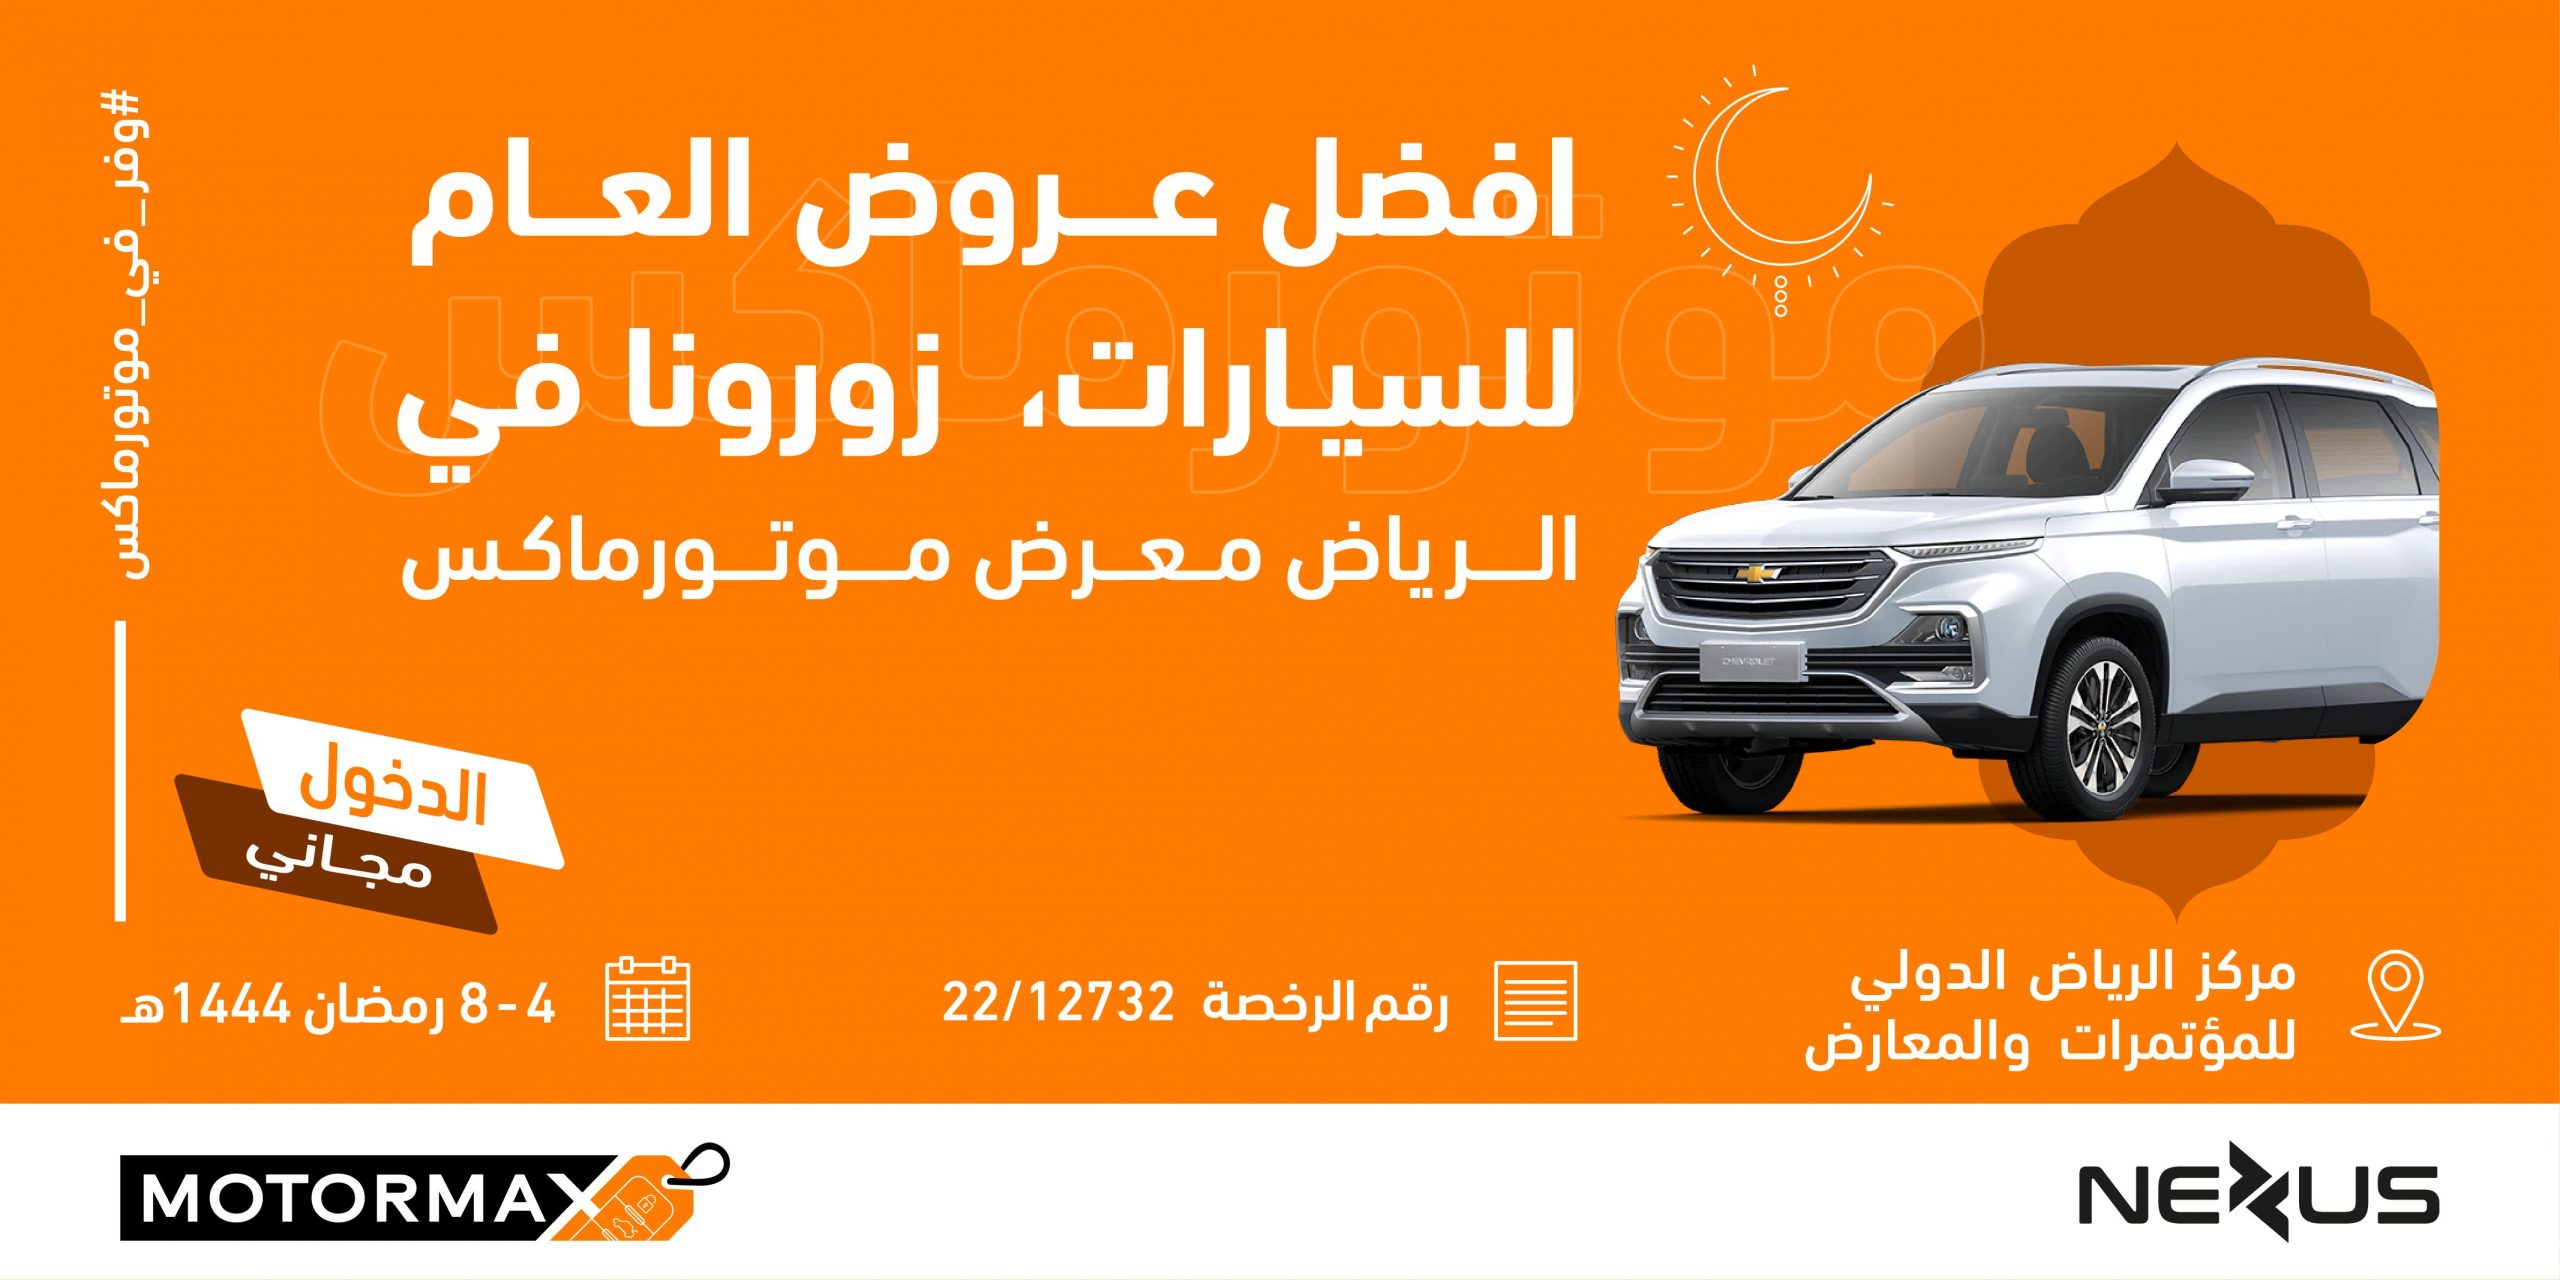 معرض رمضان الاستهلاكي للسيارات "موتورماكس" يستقبل زواره خلال شهر رمضان المبارك في مركز الرياض الدولي للمؤتمرات والمعارض 21